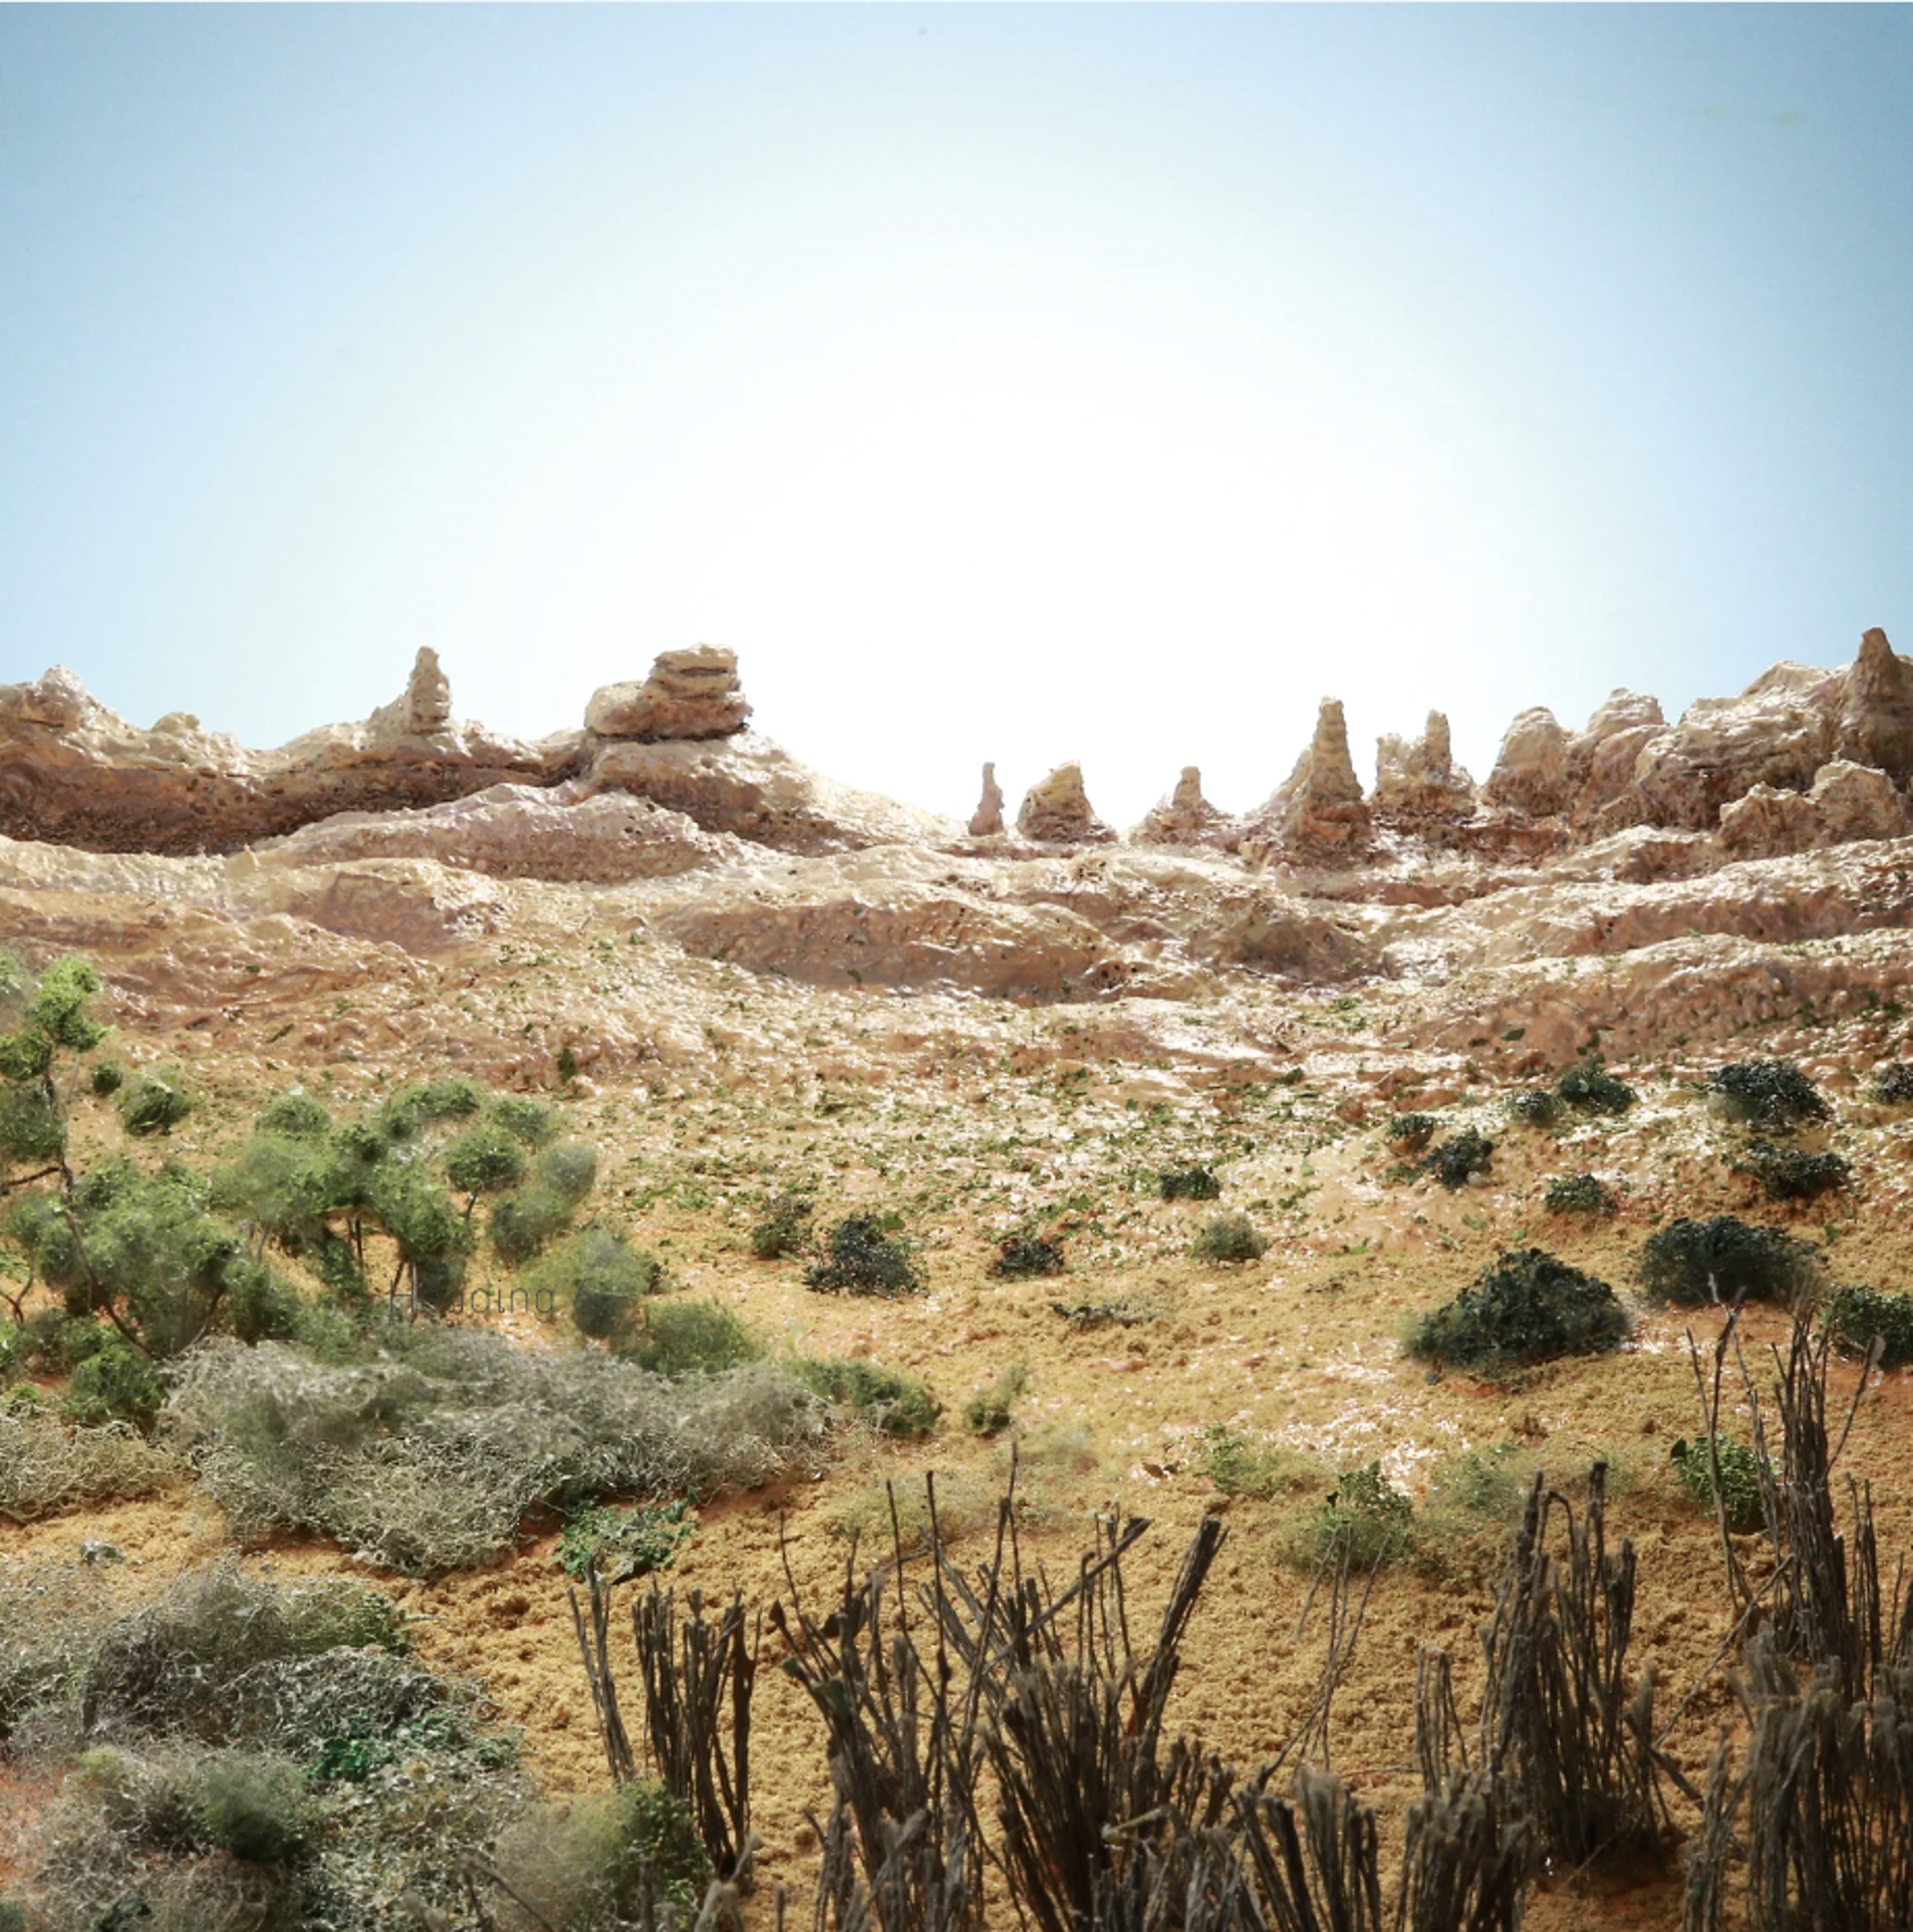 Desert by Stephen Dorsett